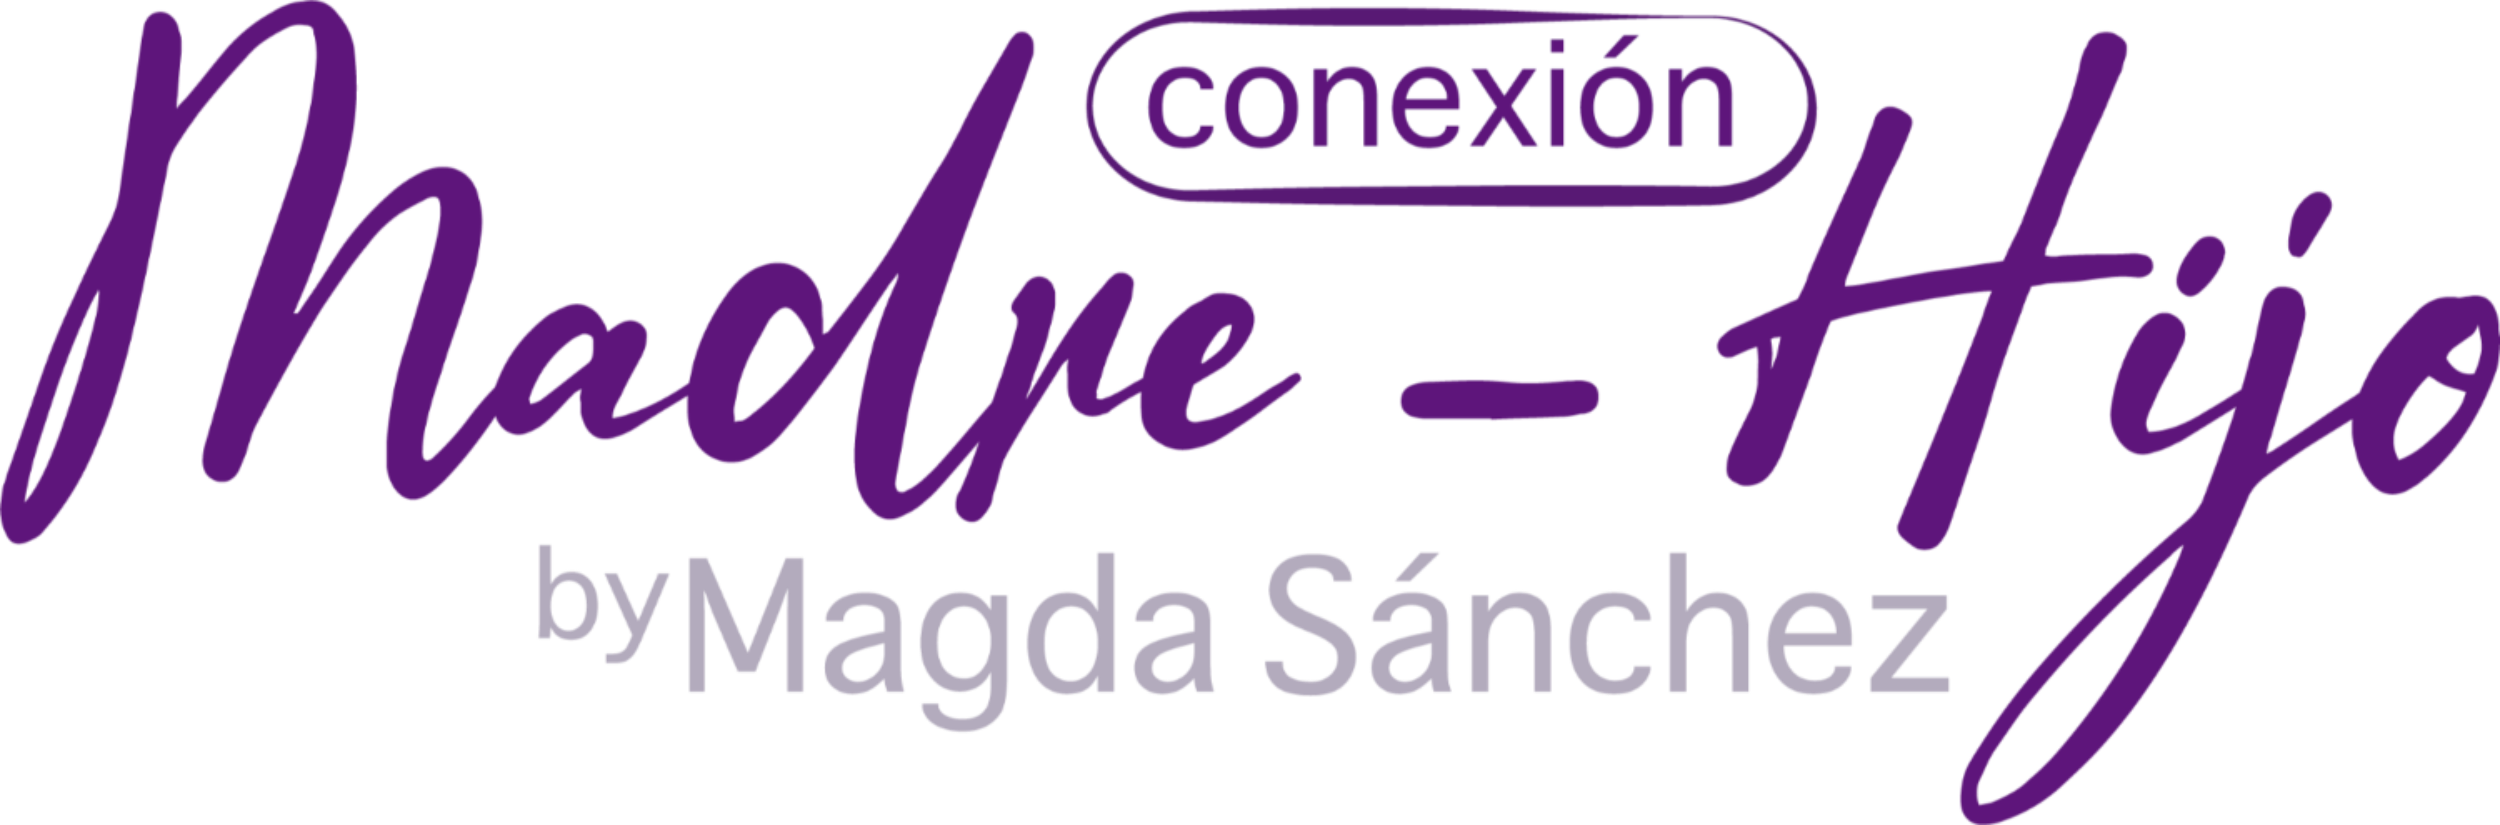 logo conexion